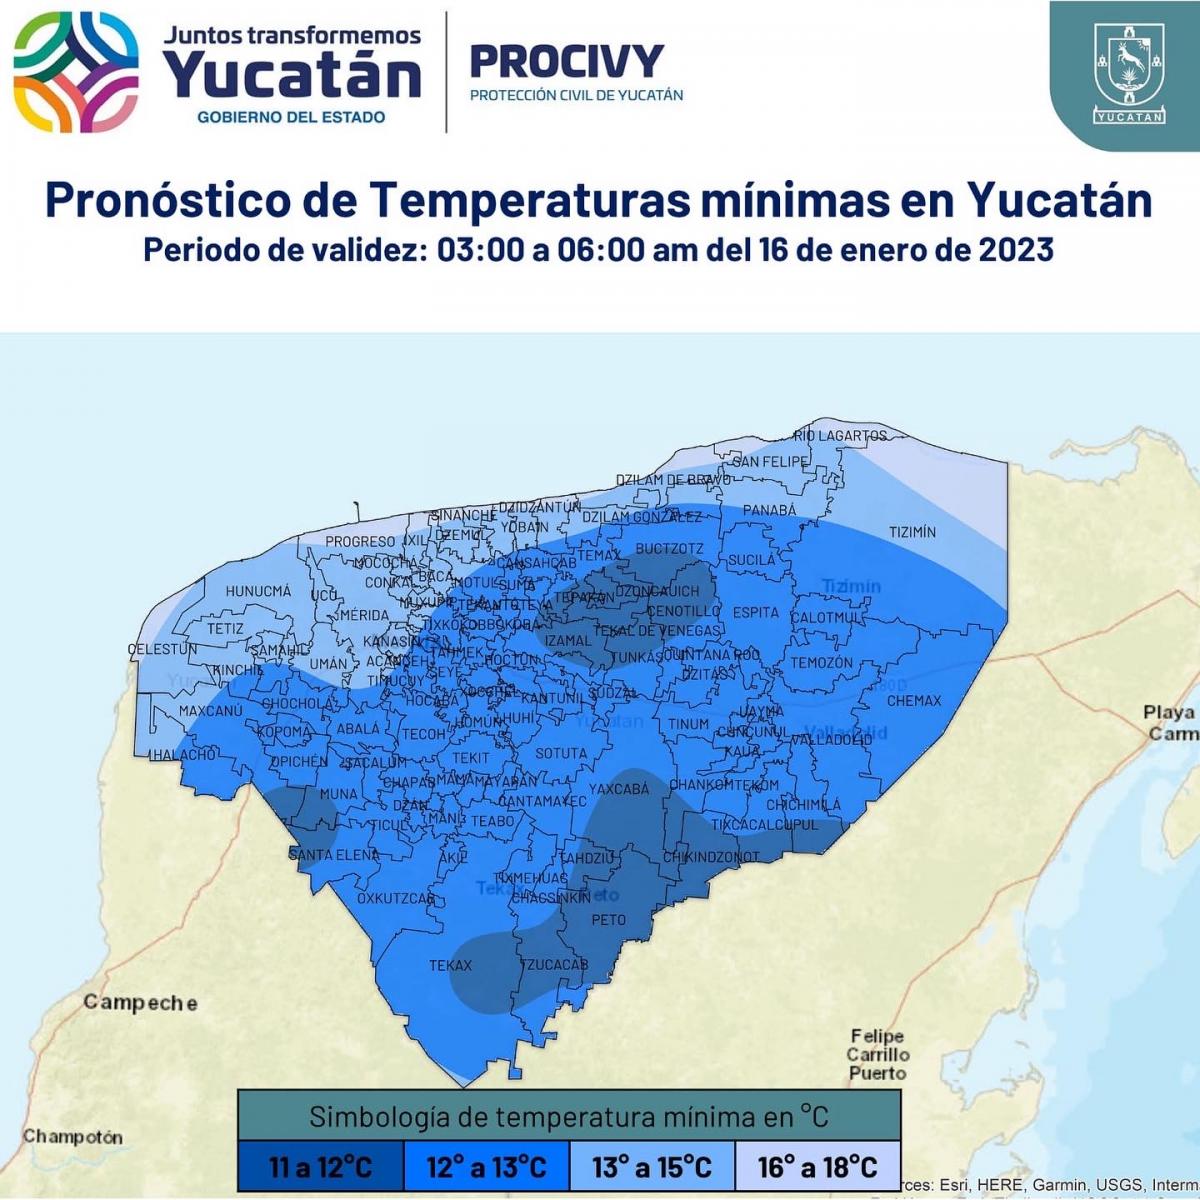 Reporta Procivy 7.6°C en Sudzal Chico, Tekax y 11°C en Mérida; se recuperan las temperaturas gradualmente a partir del lunes.